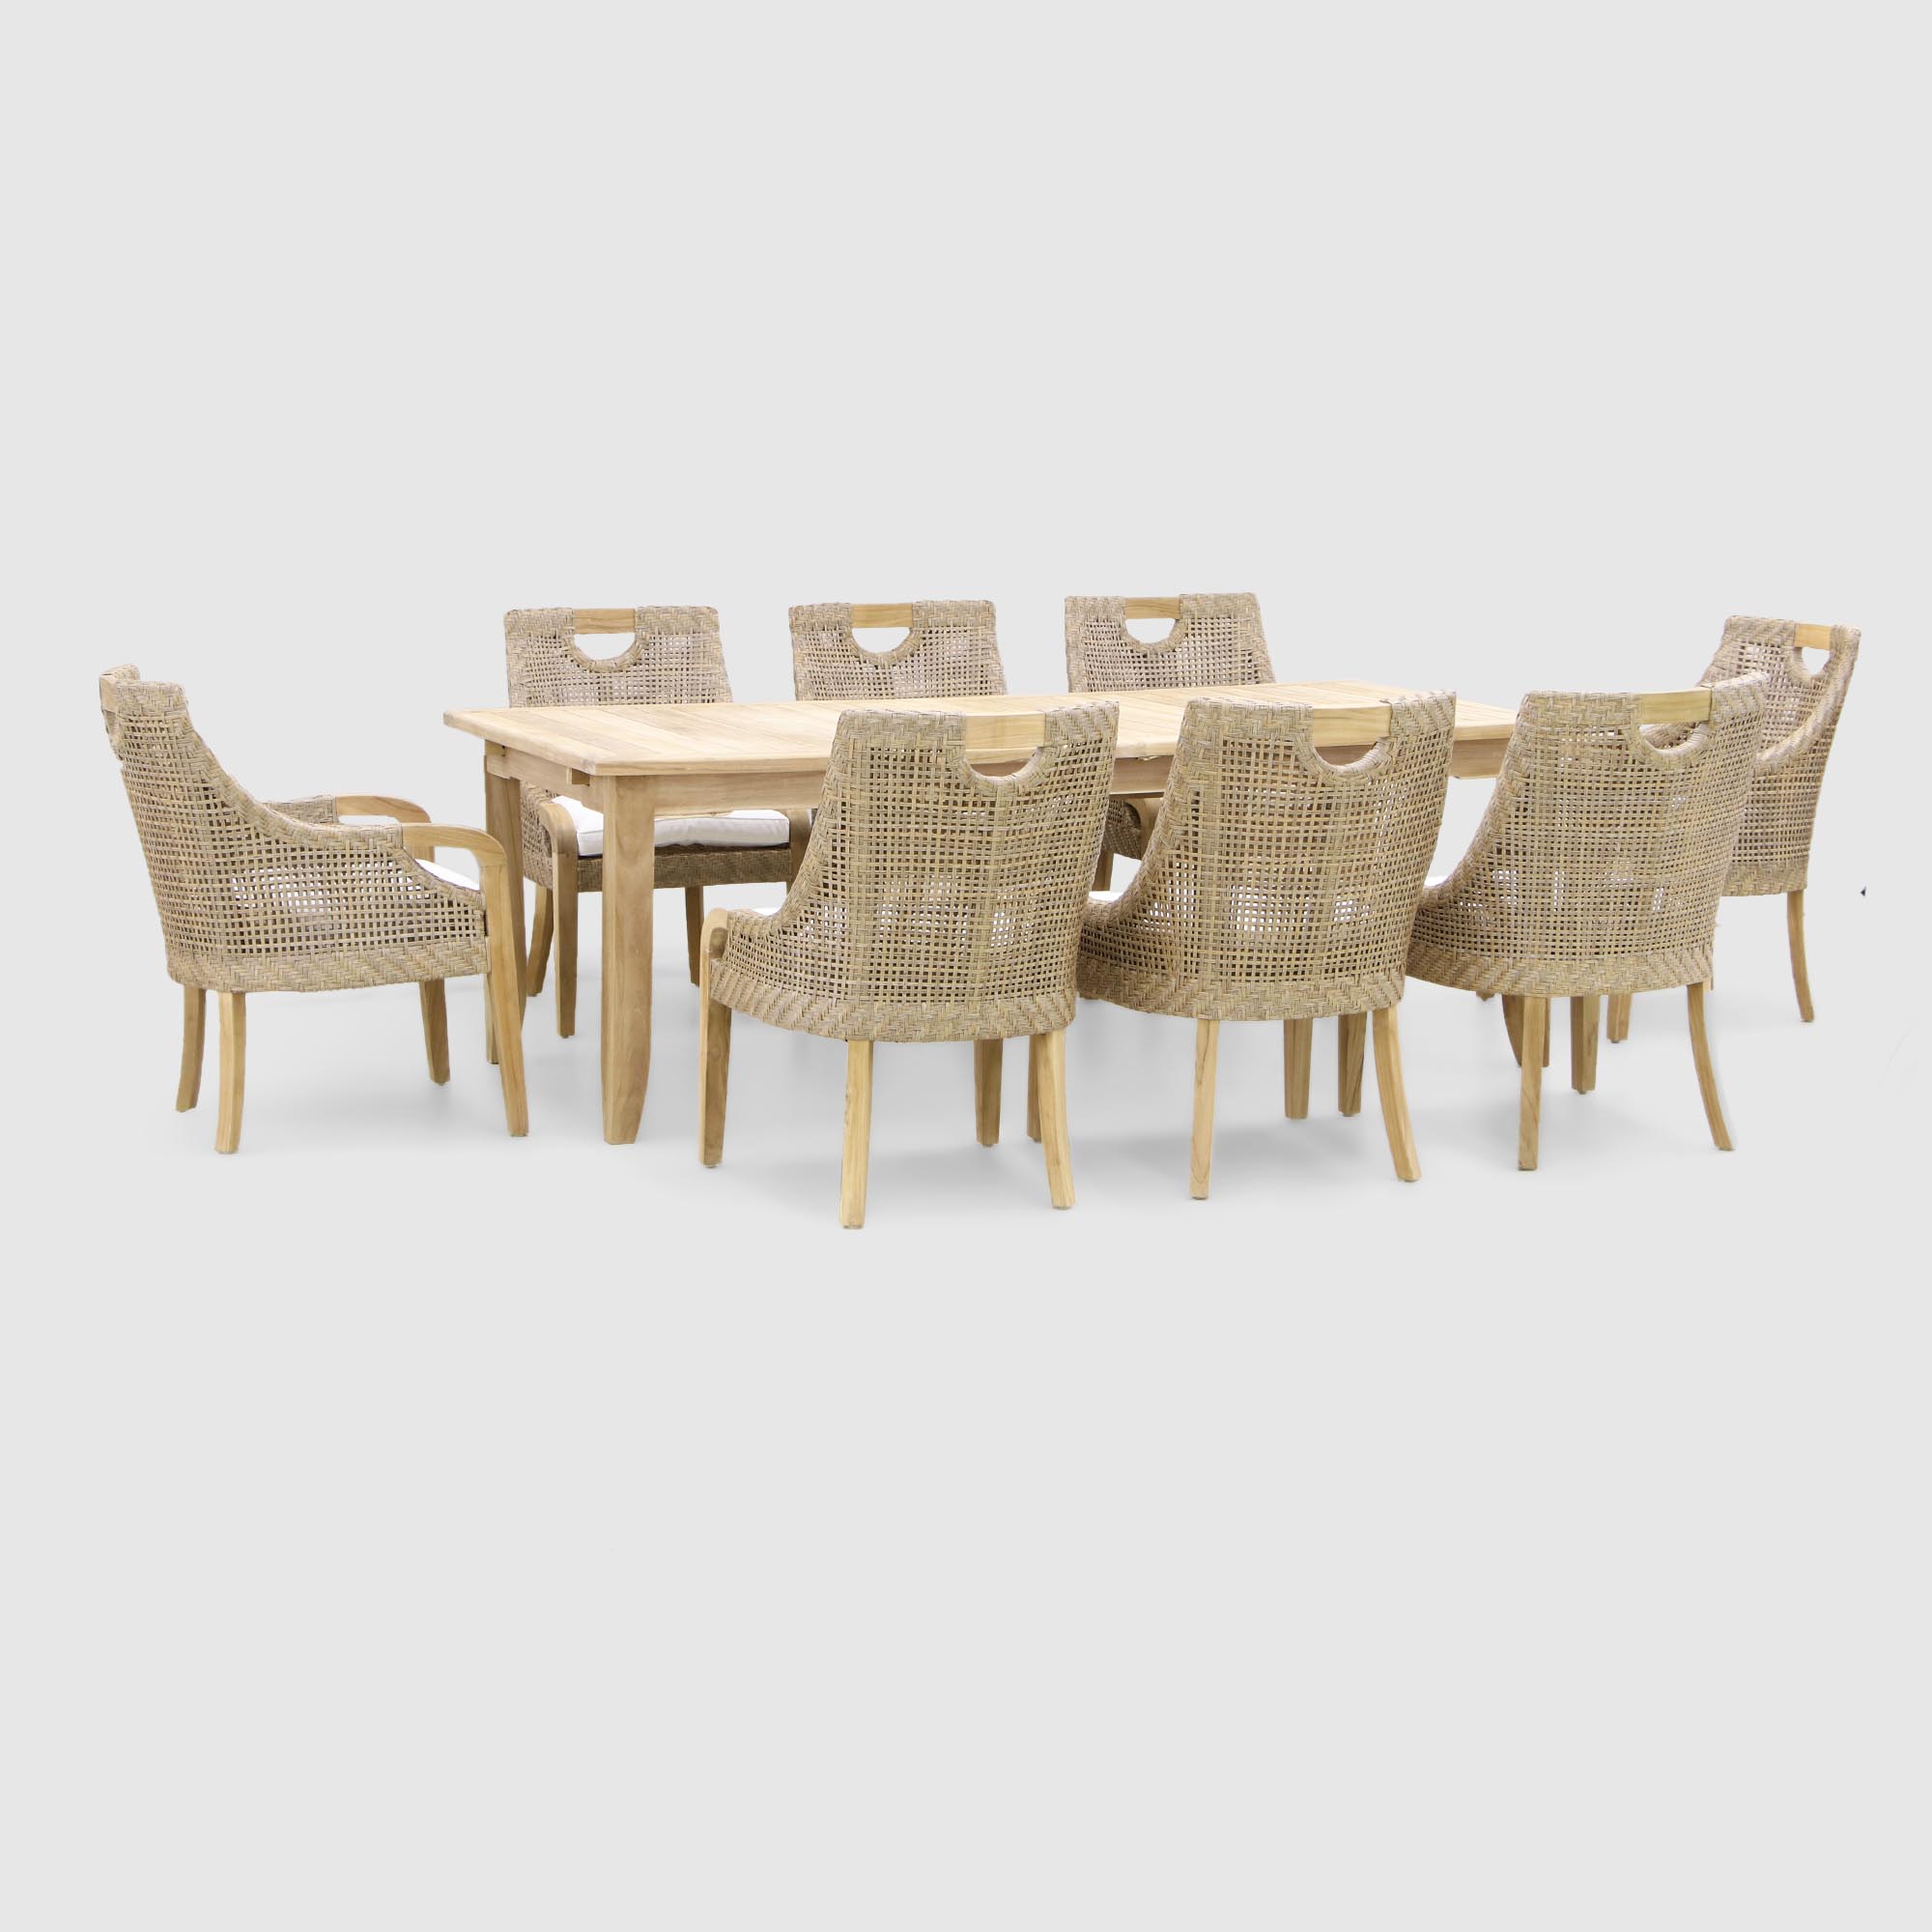 Комплект мебели Jepara curved из 9 предметов: 2 кресла+6 стульев+стол safari modern комплект из 4 стульев